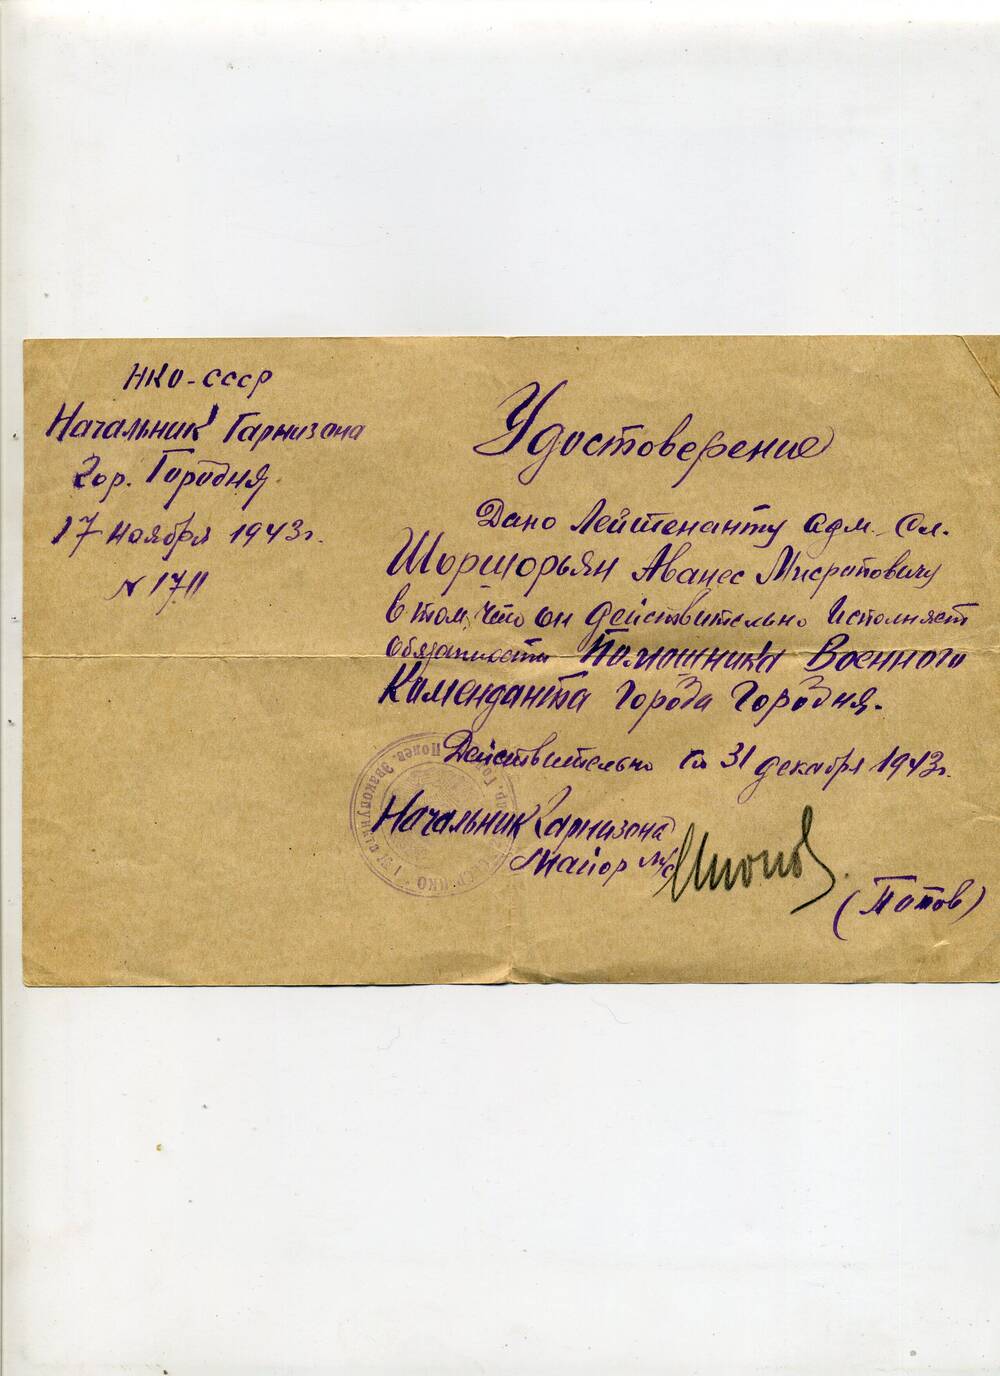 Удостоверение, выданное лейтенанту административной службы О.М. Шоршорьян в том, что он исполняет обязаннояти помощника военного коменданта города Городня. 17 ноября 1943 года.